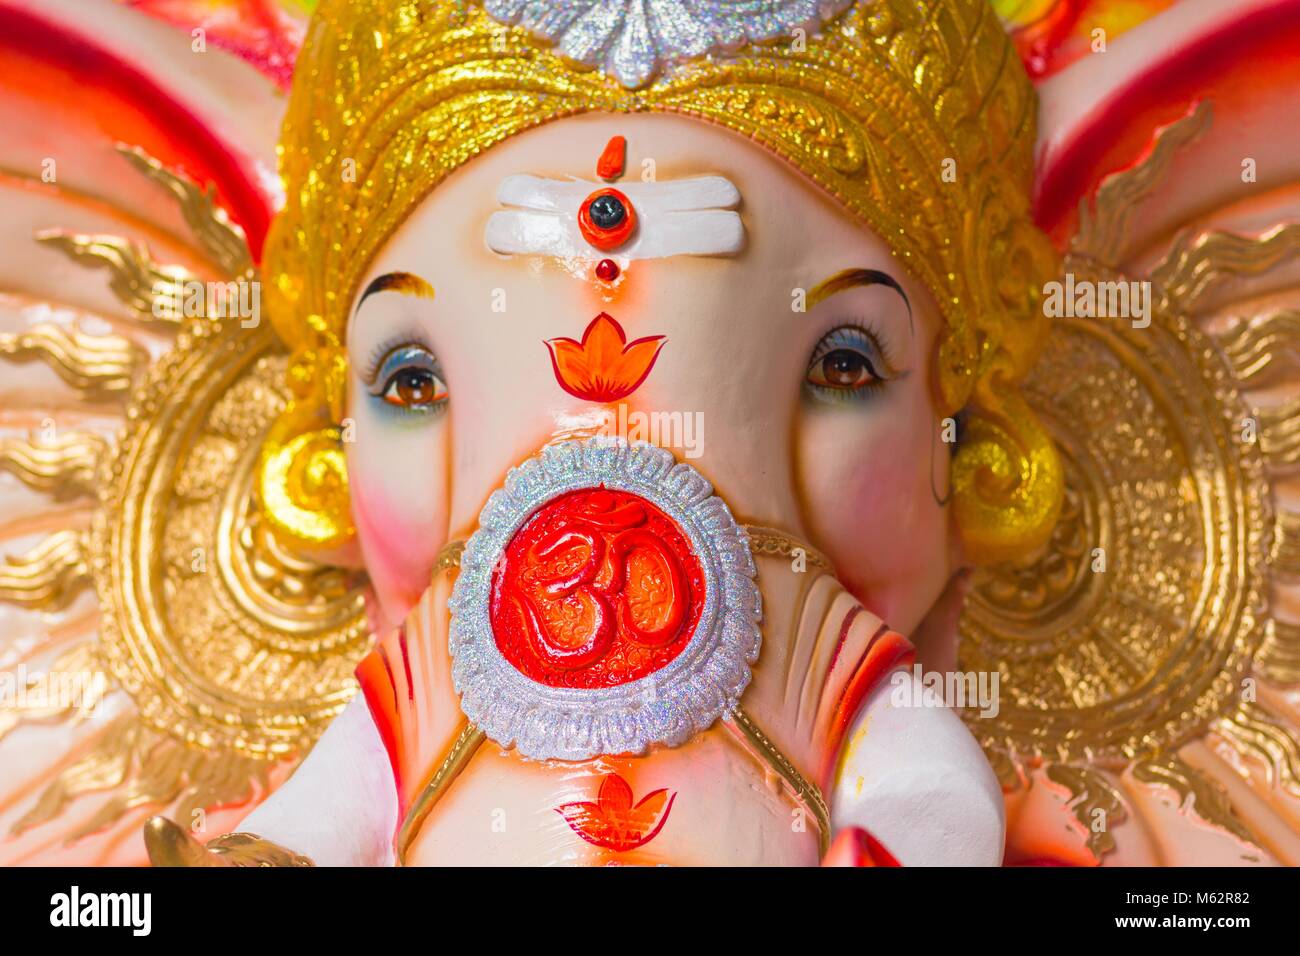 God Ganesha colorful elephant statue to celebrate Hindu Festival Ganesha Chaturthi in India. The Om symbol on the face Stock Photo